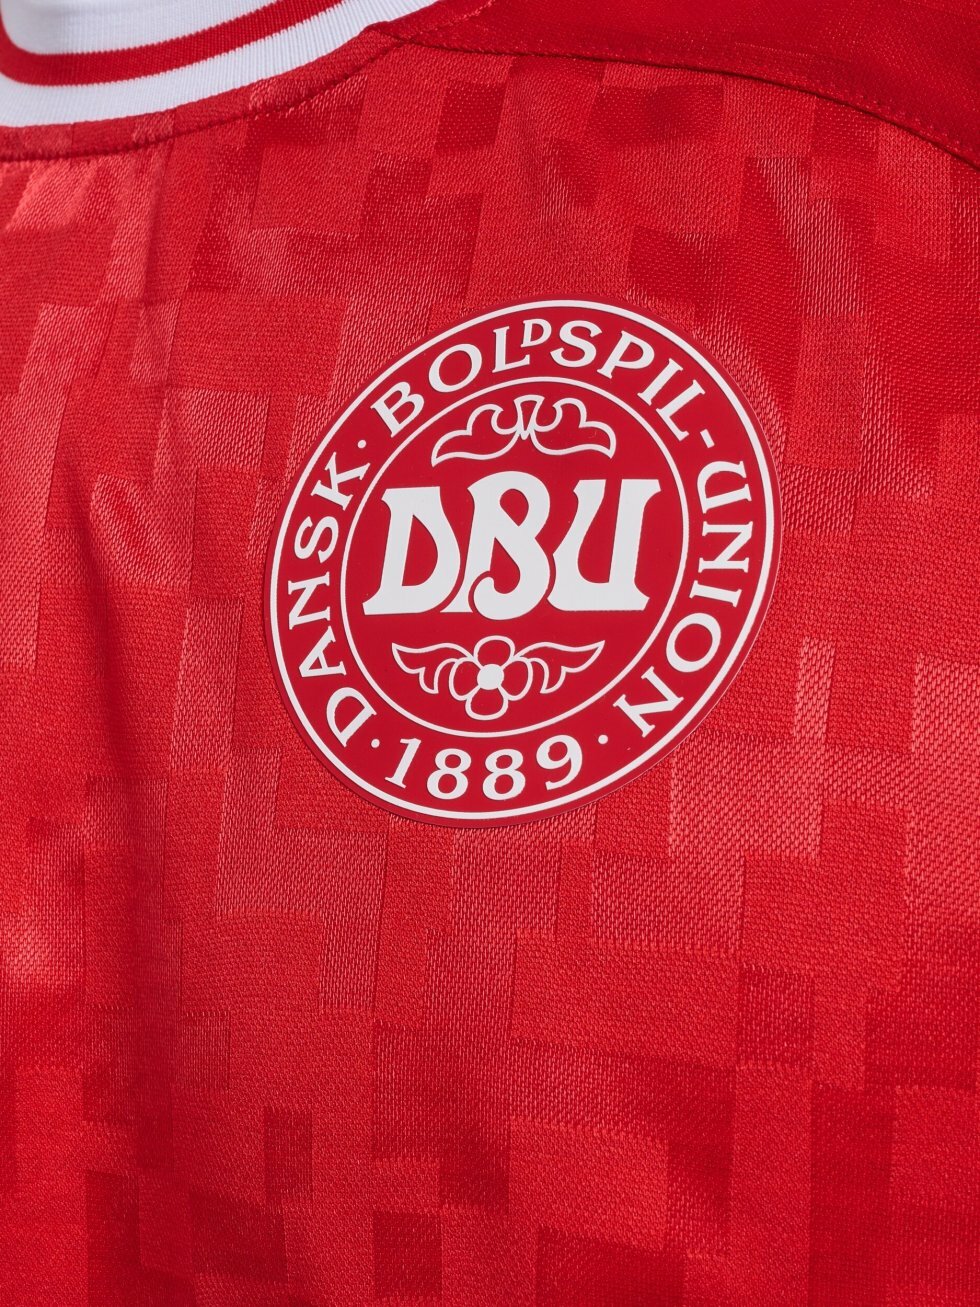 DBU/Hummel - Her er historien bag landsholdets EM-trøje